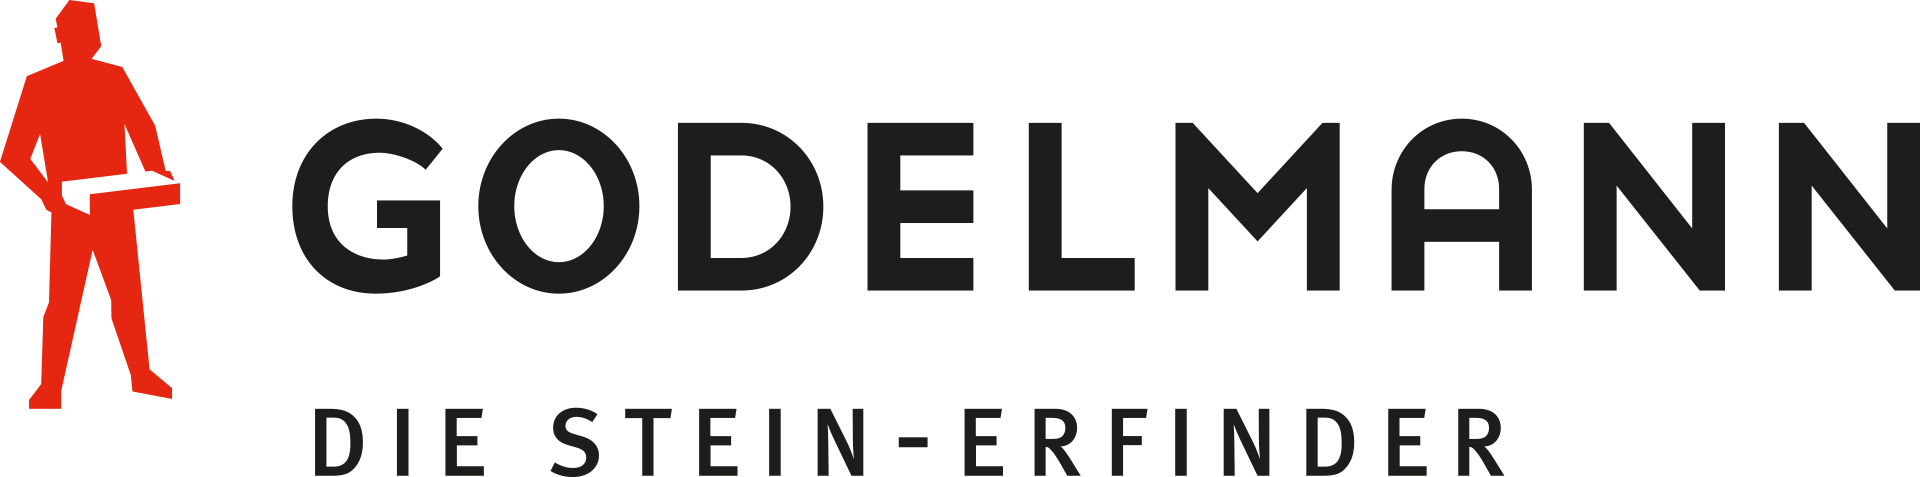 Godelmann GmbH & Co-KG logo